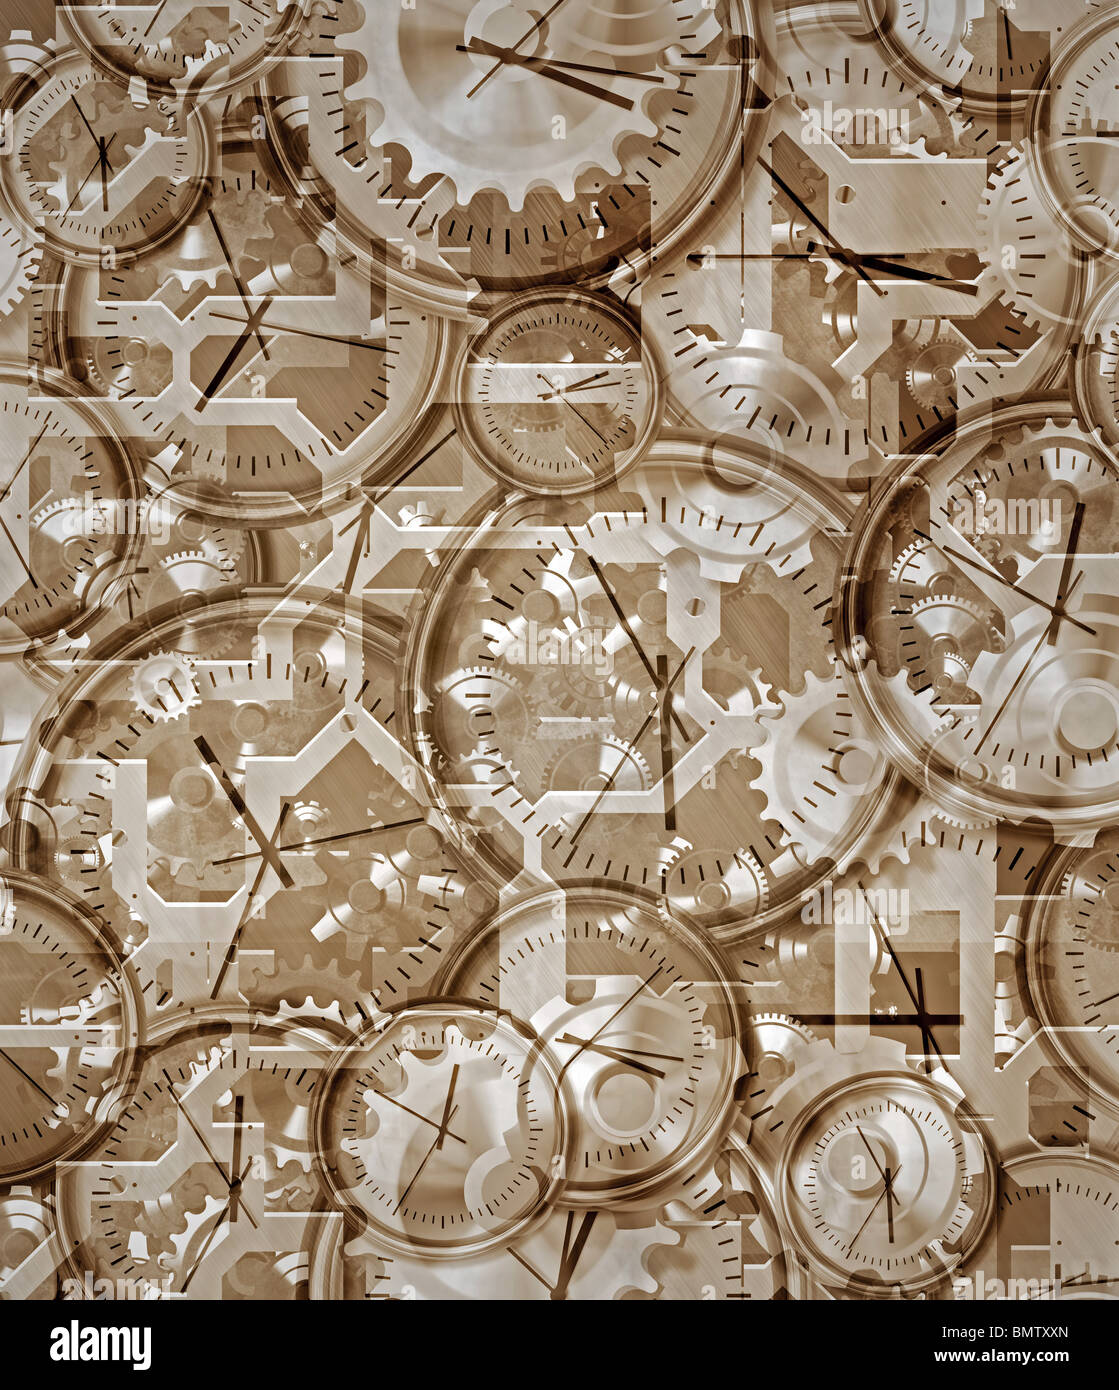 Zeit vergangen braun Sepia Zusammenfassung von Uhren und Uhrwerk Stockfoto